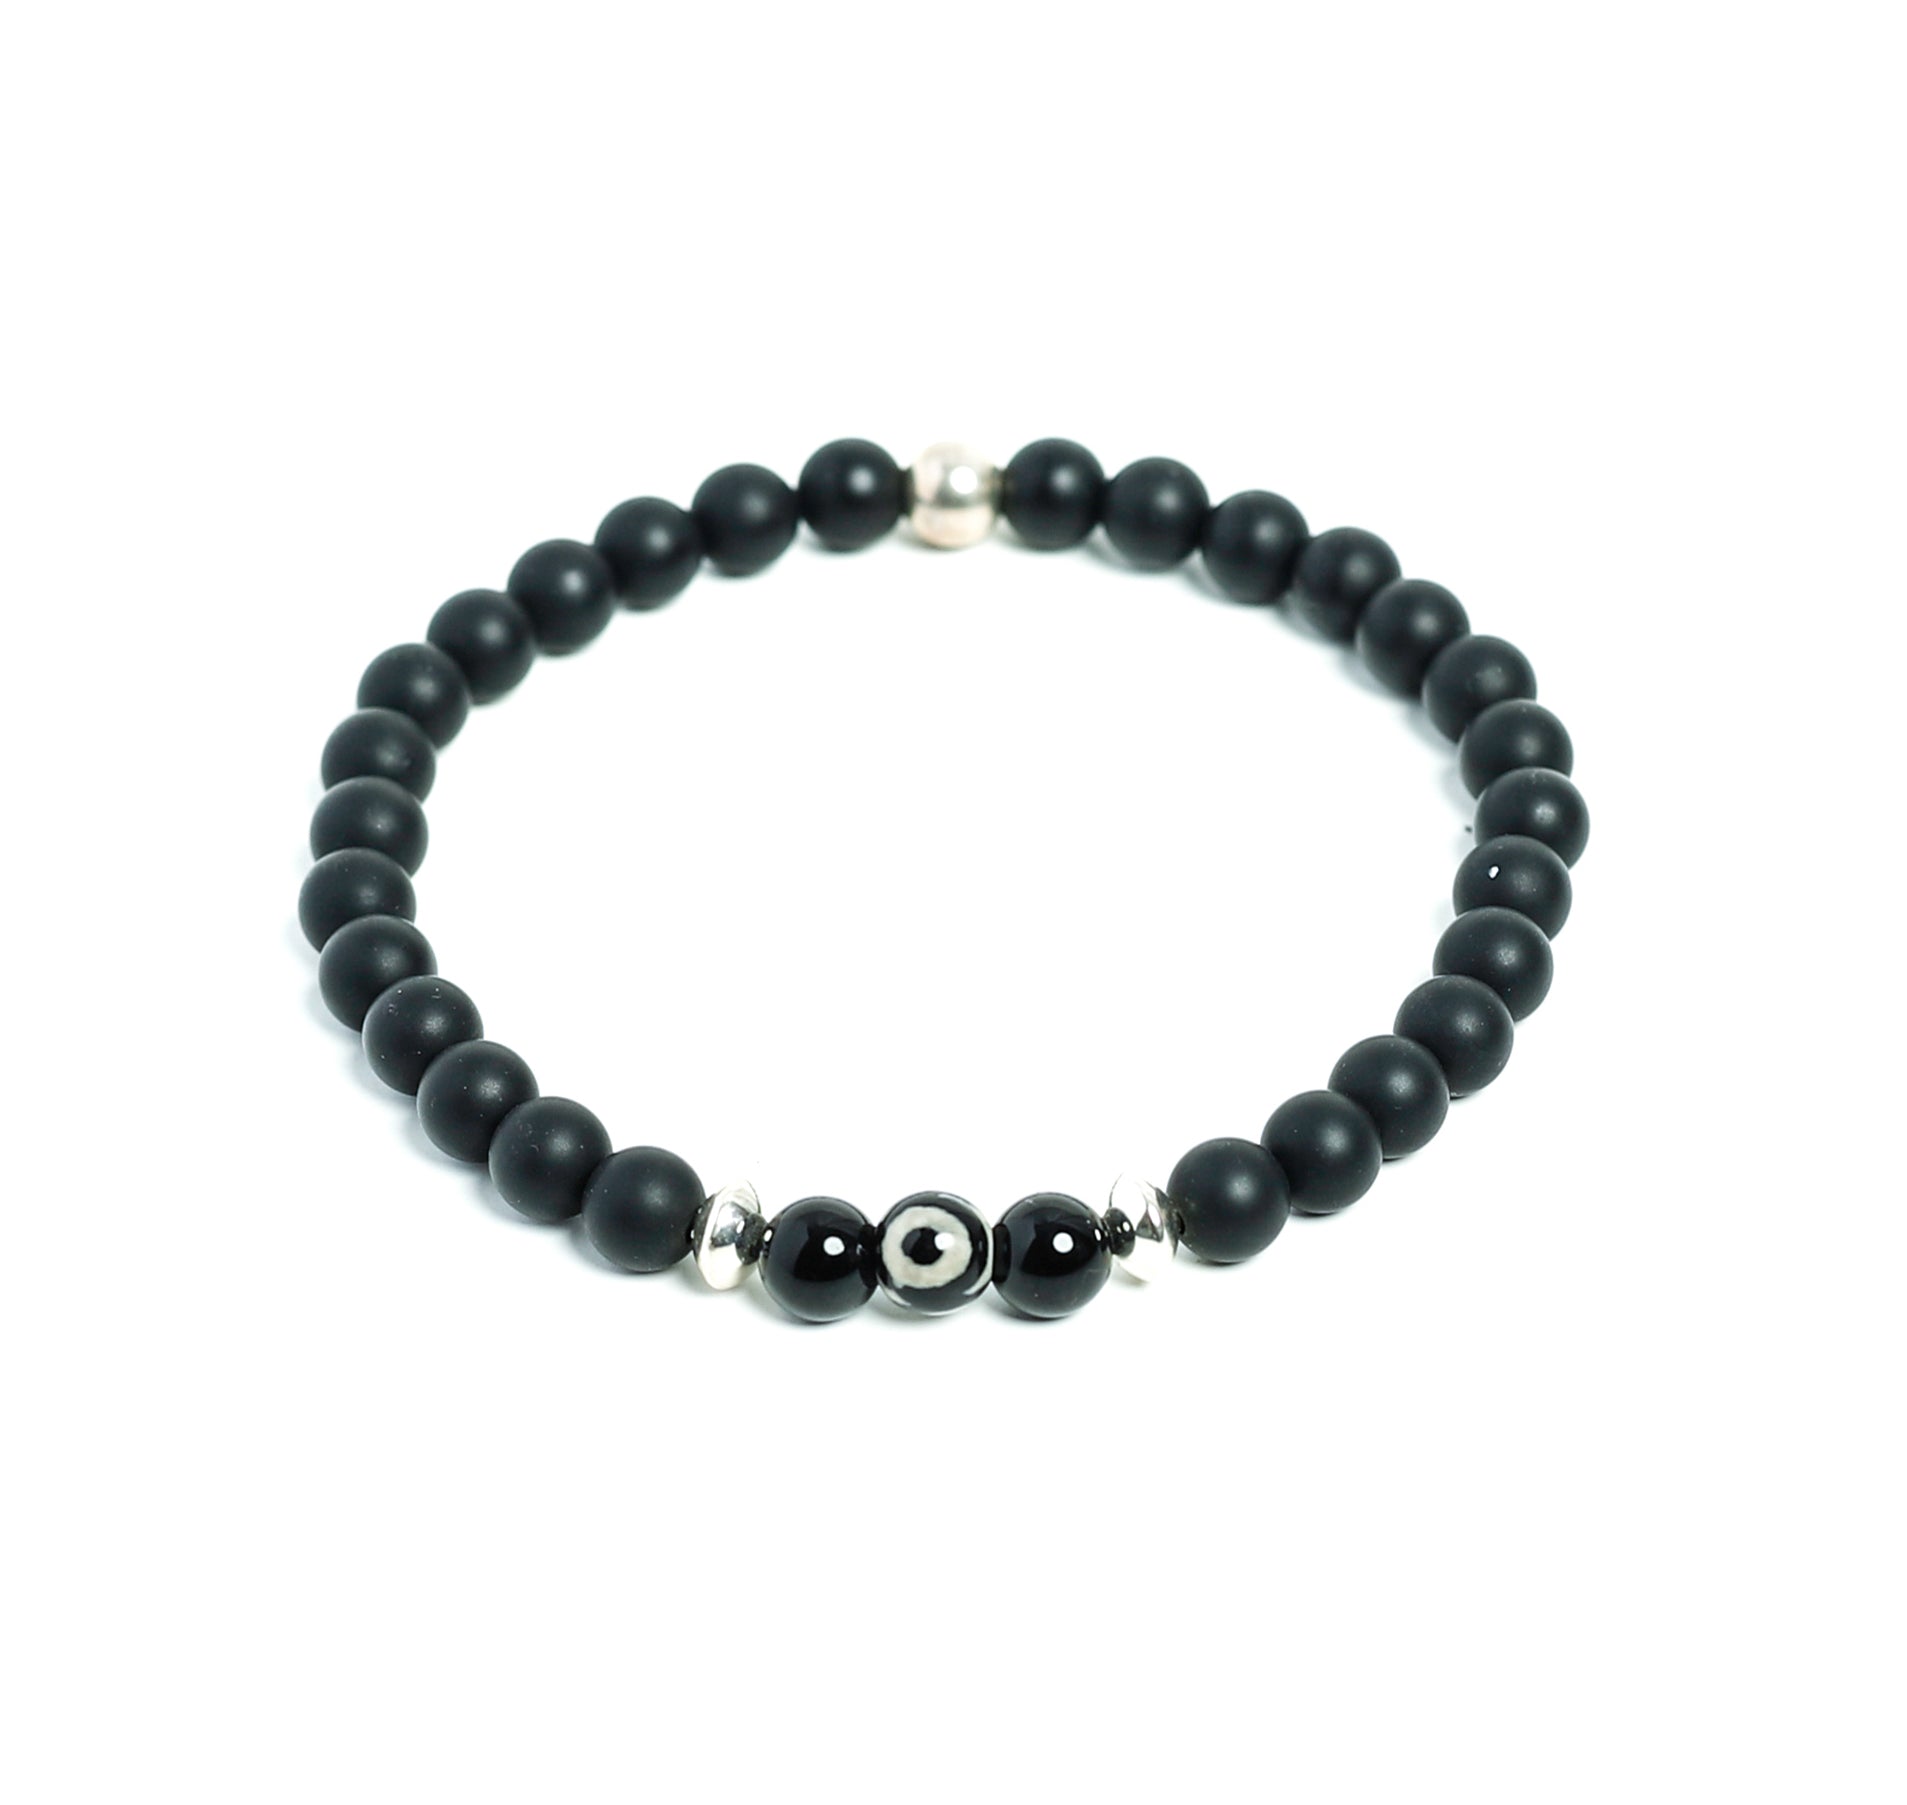 Premium Black Onyx Beaded Evil Eye Bracelet for Men handmade at RM Kandy